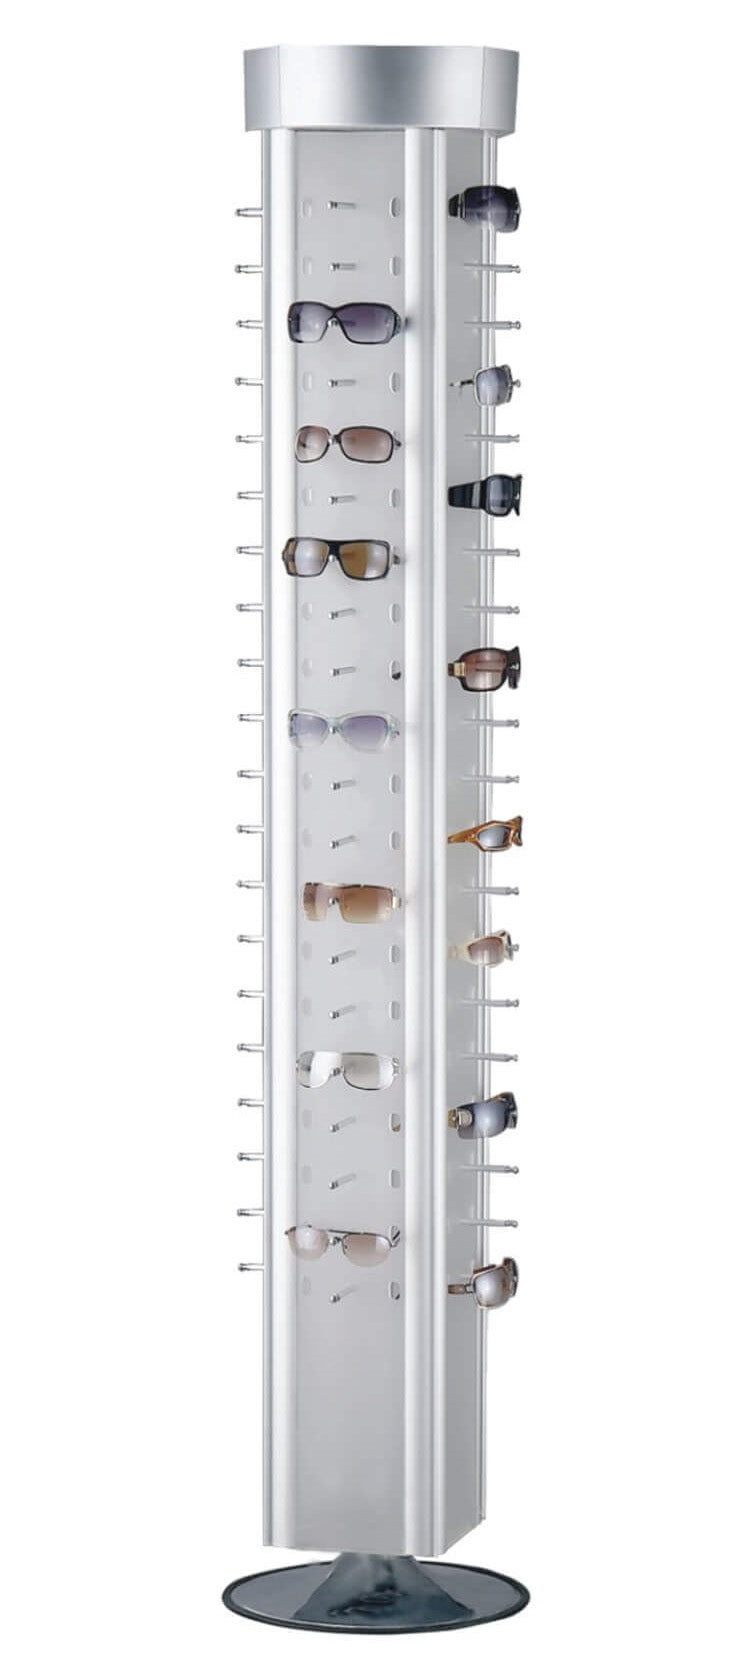 Eyeglass Display Stand D8513 - D8542